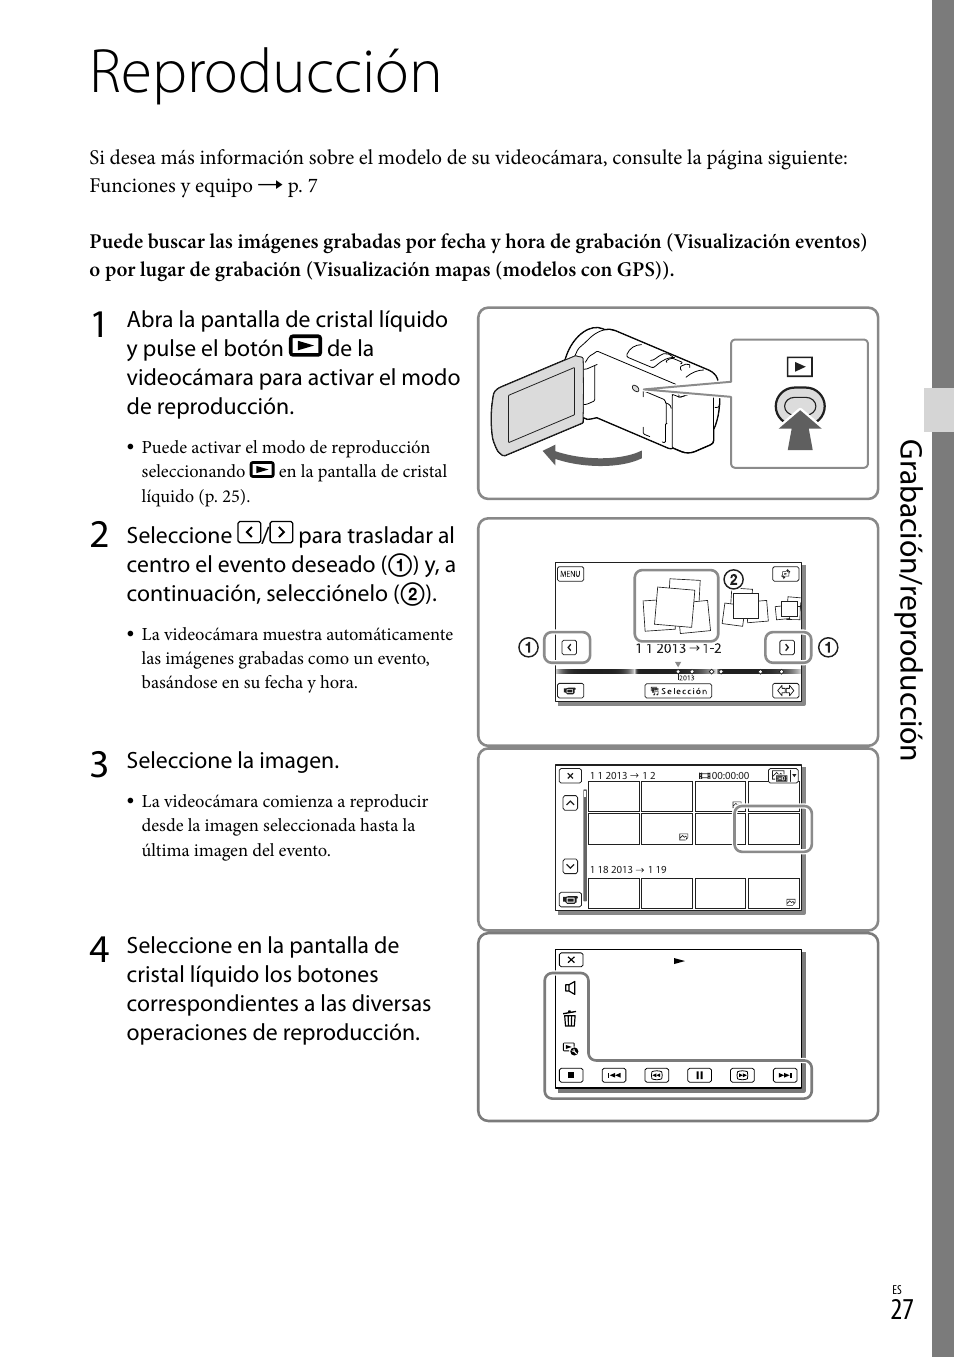 Reproducción, Es (27), Gr abación/r epr oduc ción | Sony HDR-CX430V Manual del usuario | Página 27 / 76